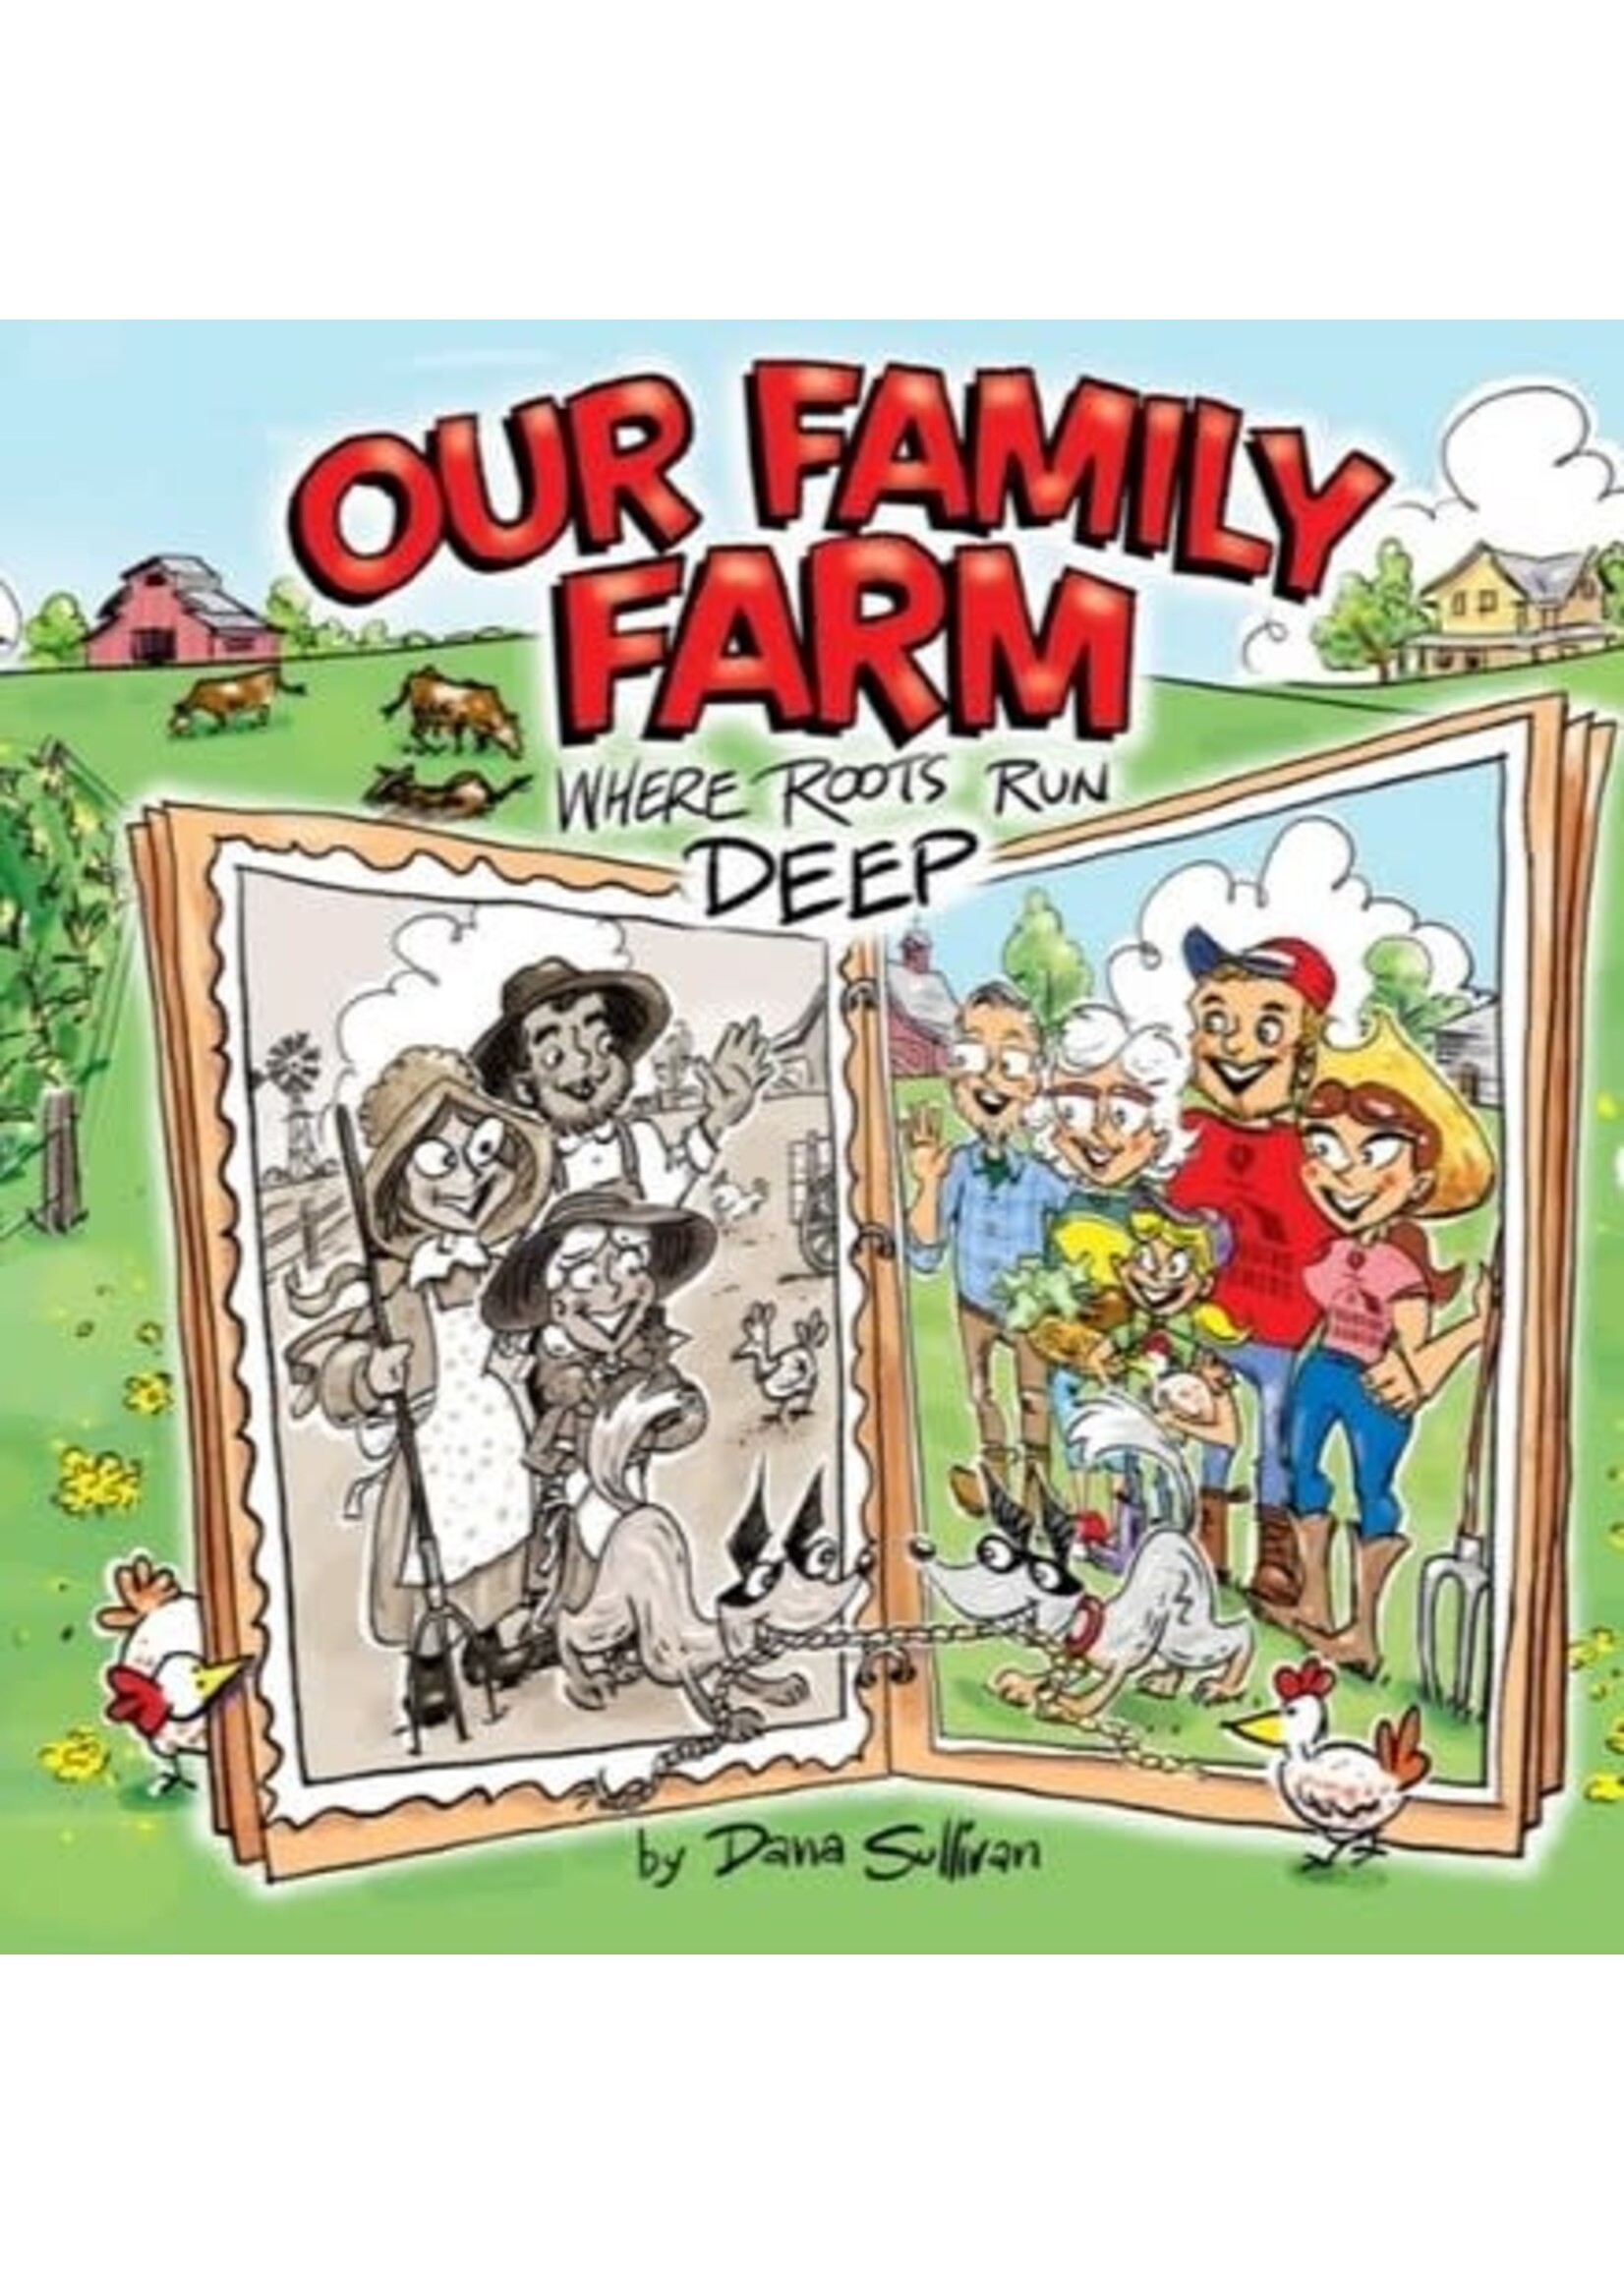 Our Family Farm: Where Roots Run Deep